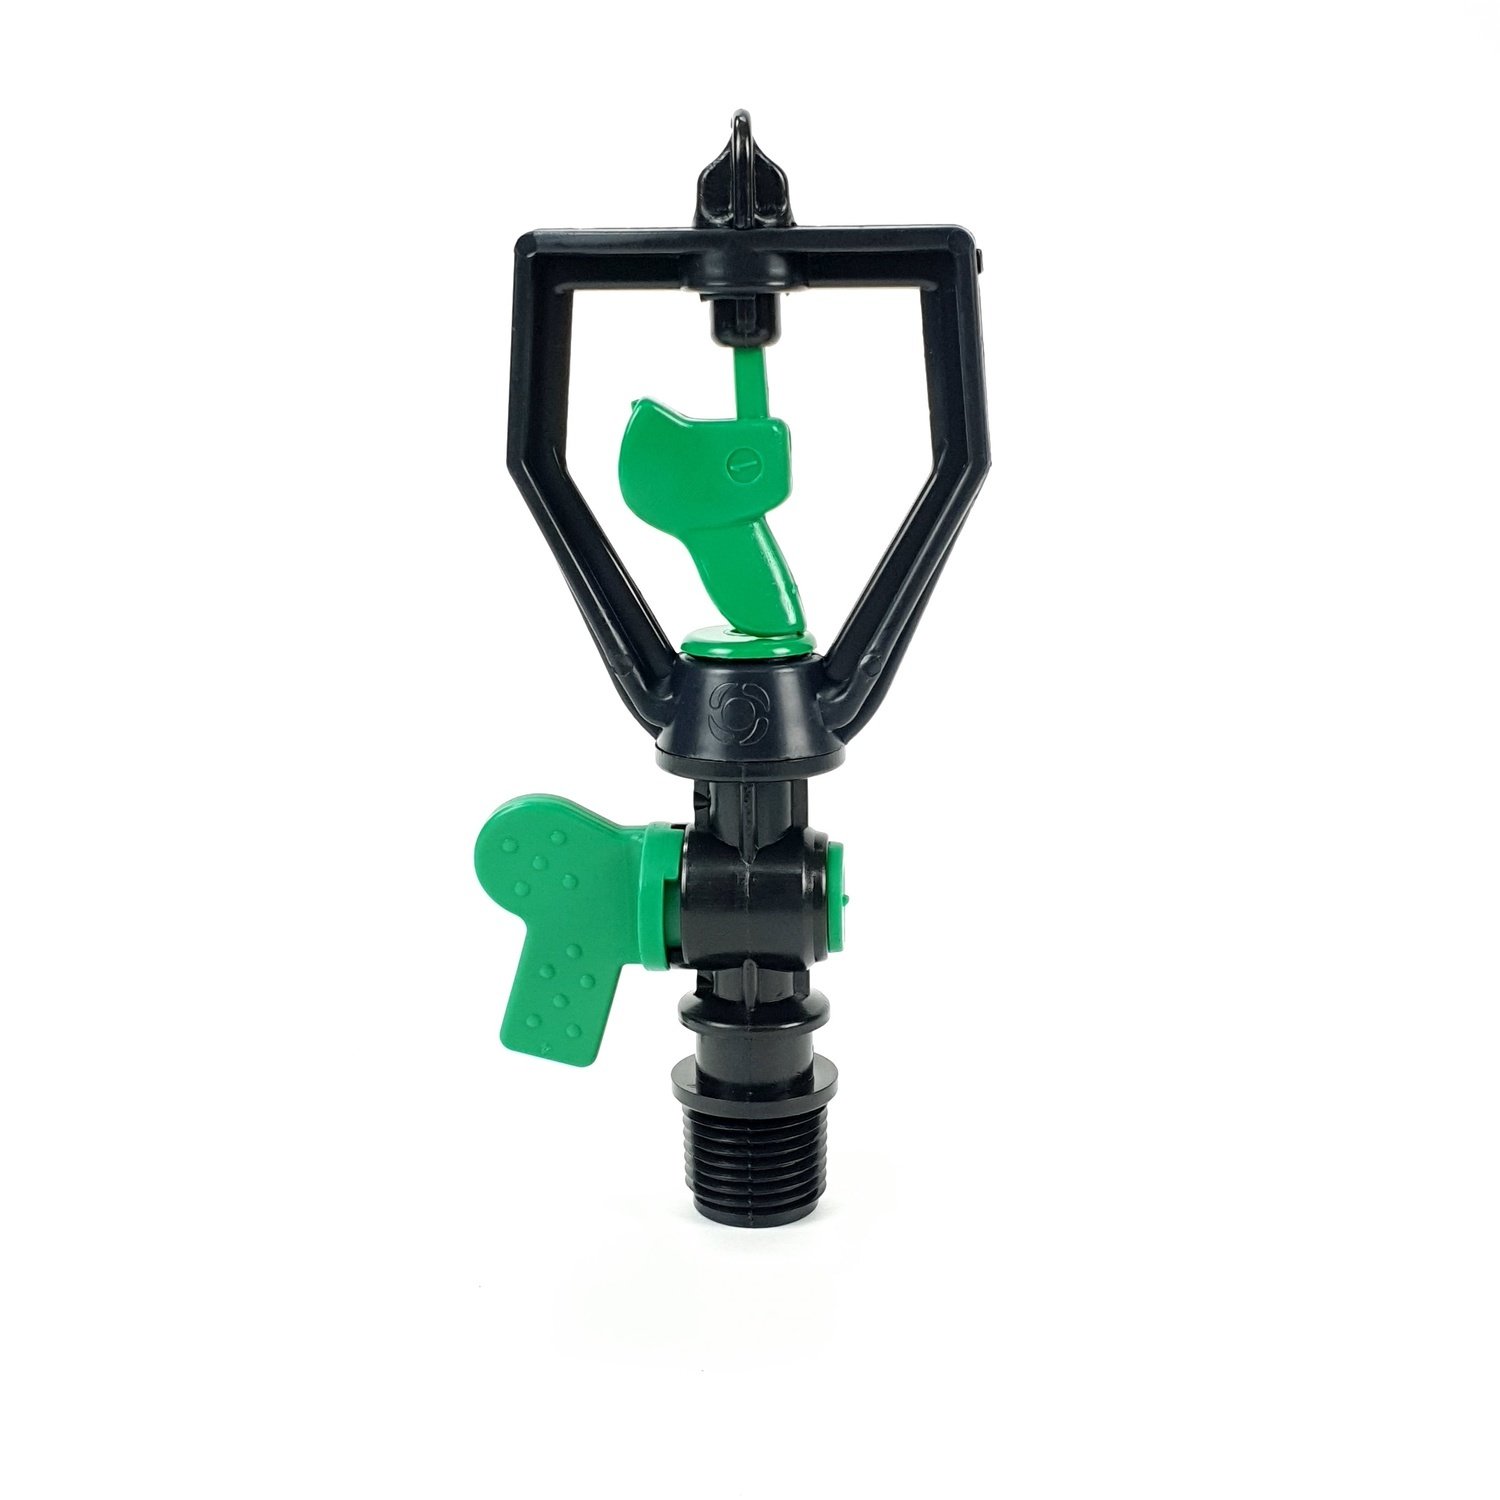 สปริงเกอร์Rotor Sprinkler หัวสปริงเกลอร์ พร้อมวาล์ว รุ่น SMV-5 Super Products